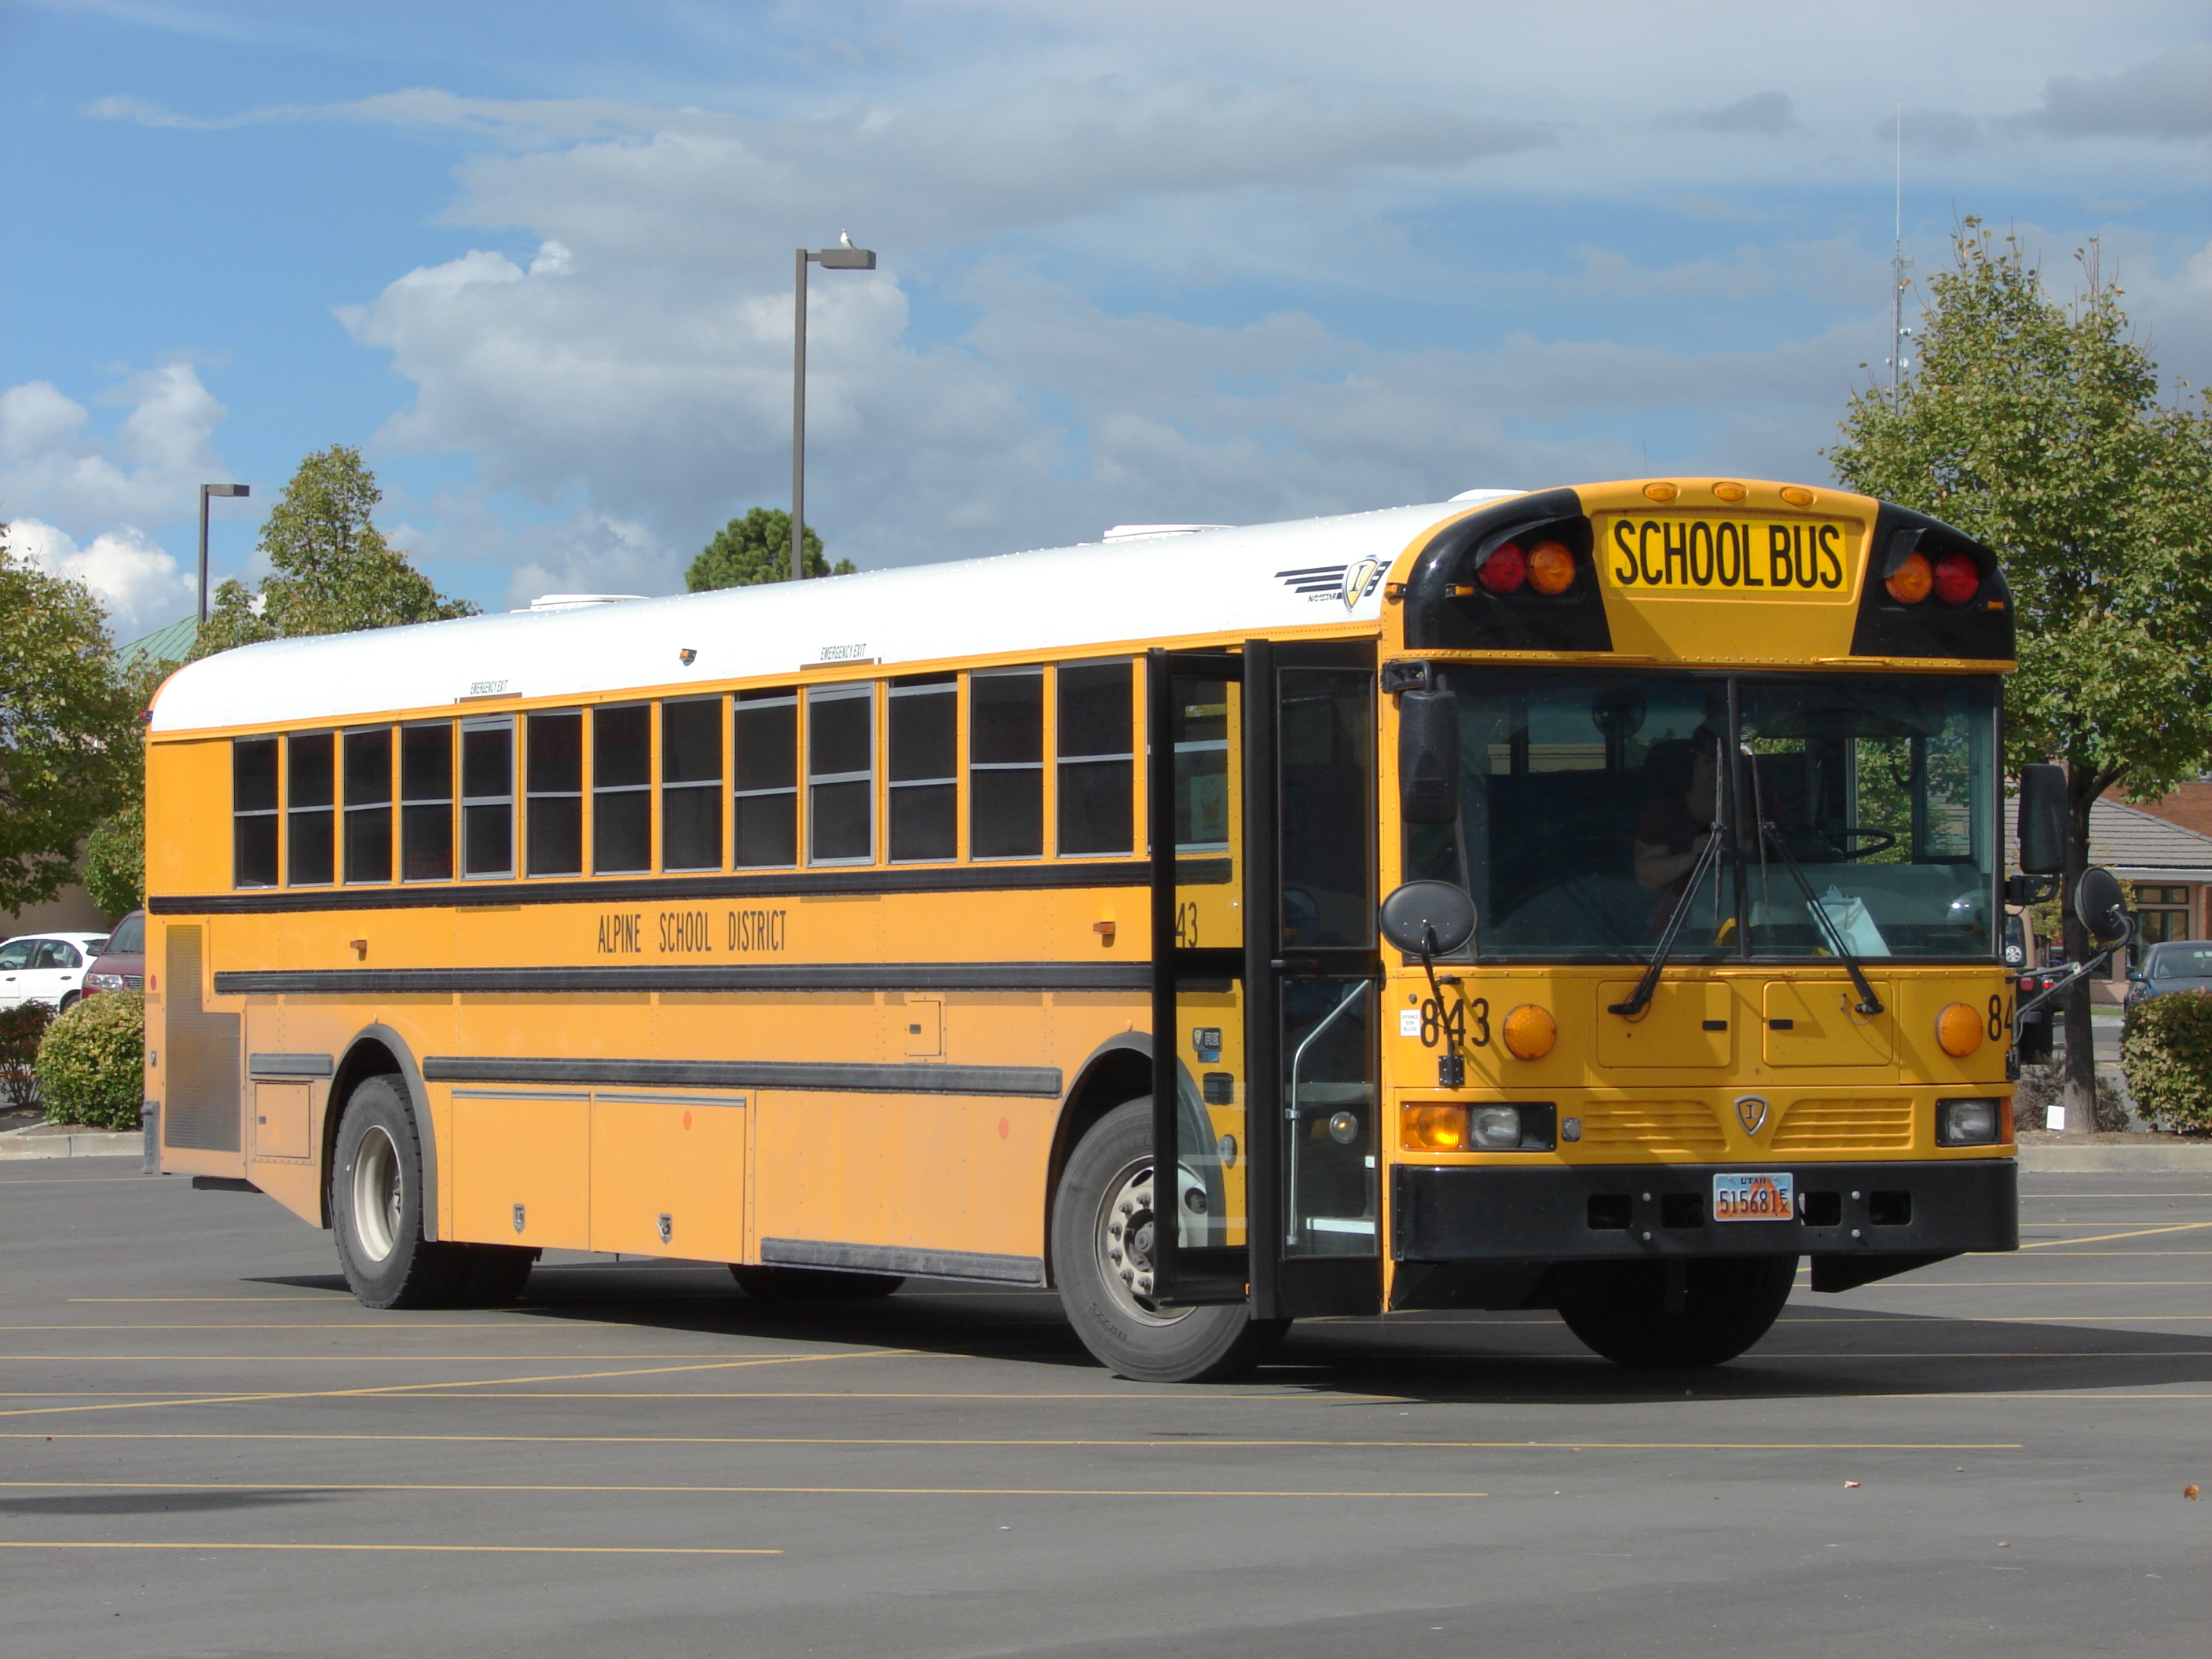 School bus photo